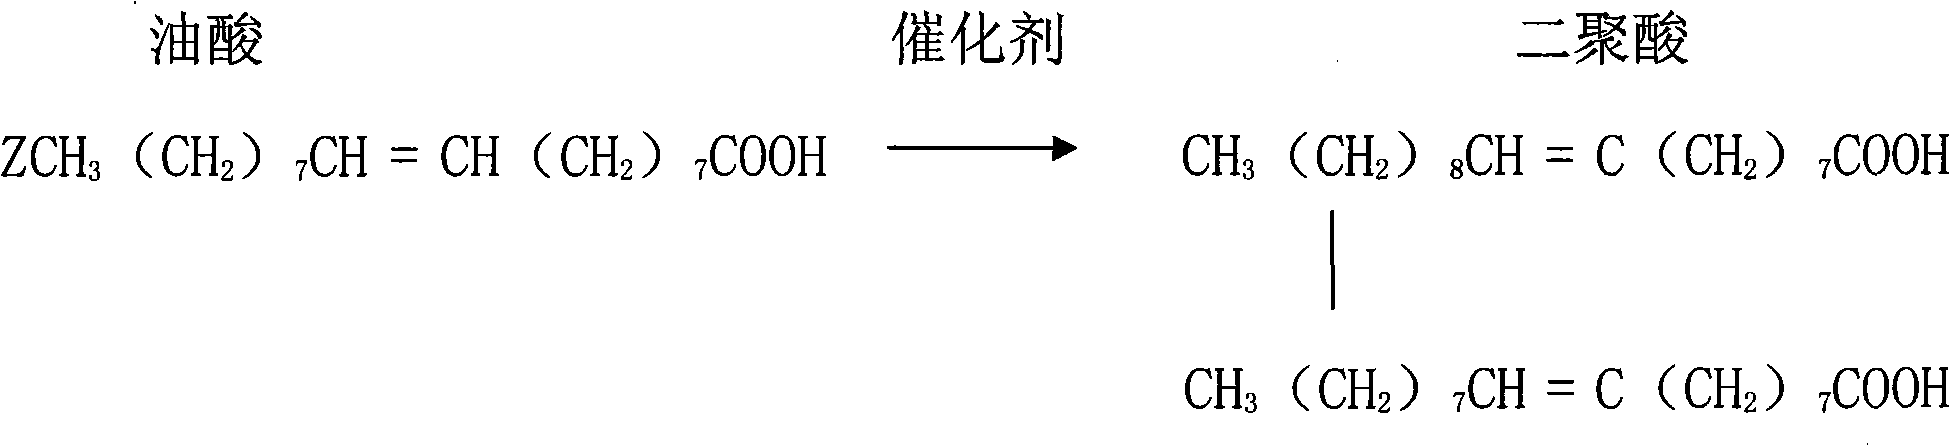 Light-colored low-phosphorous dimer acid production process